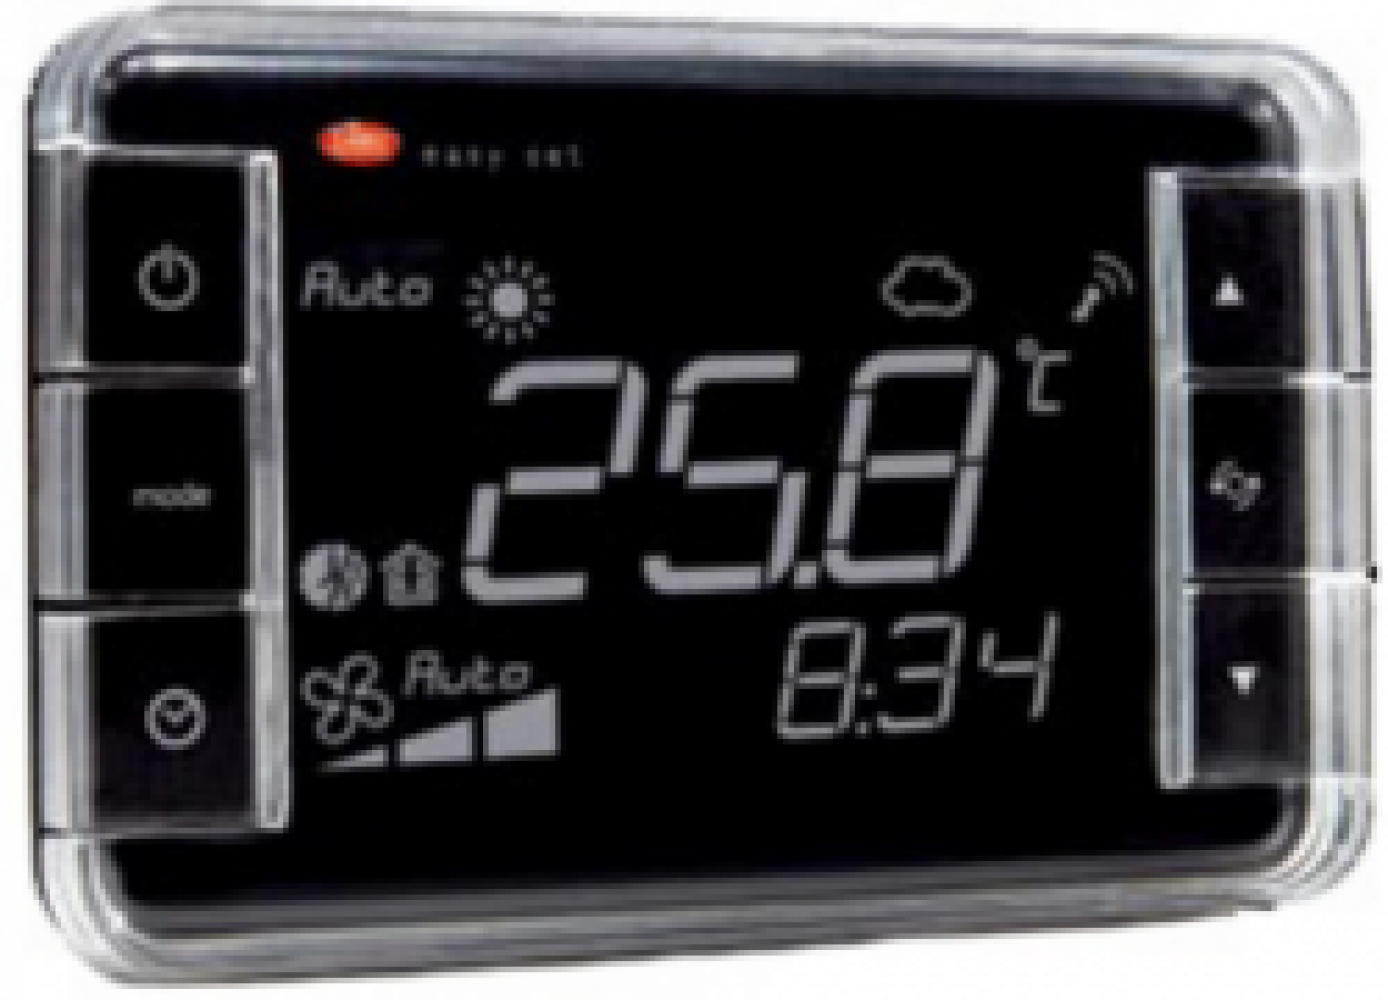 EW01TA1300 Термостат Easyset для e-dronic, контроль температуры, корпус белого цвета, &quot;прямое&quot; отображение, подсветка